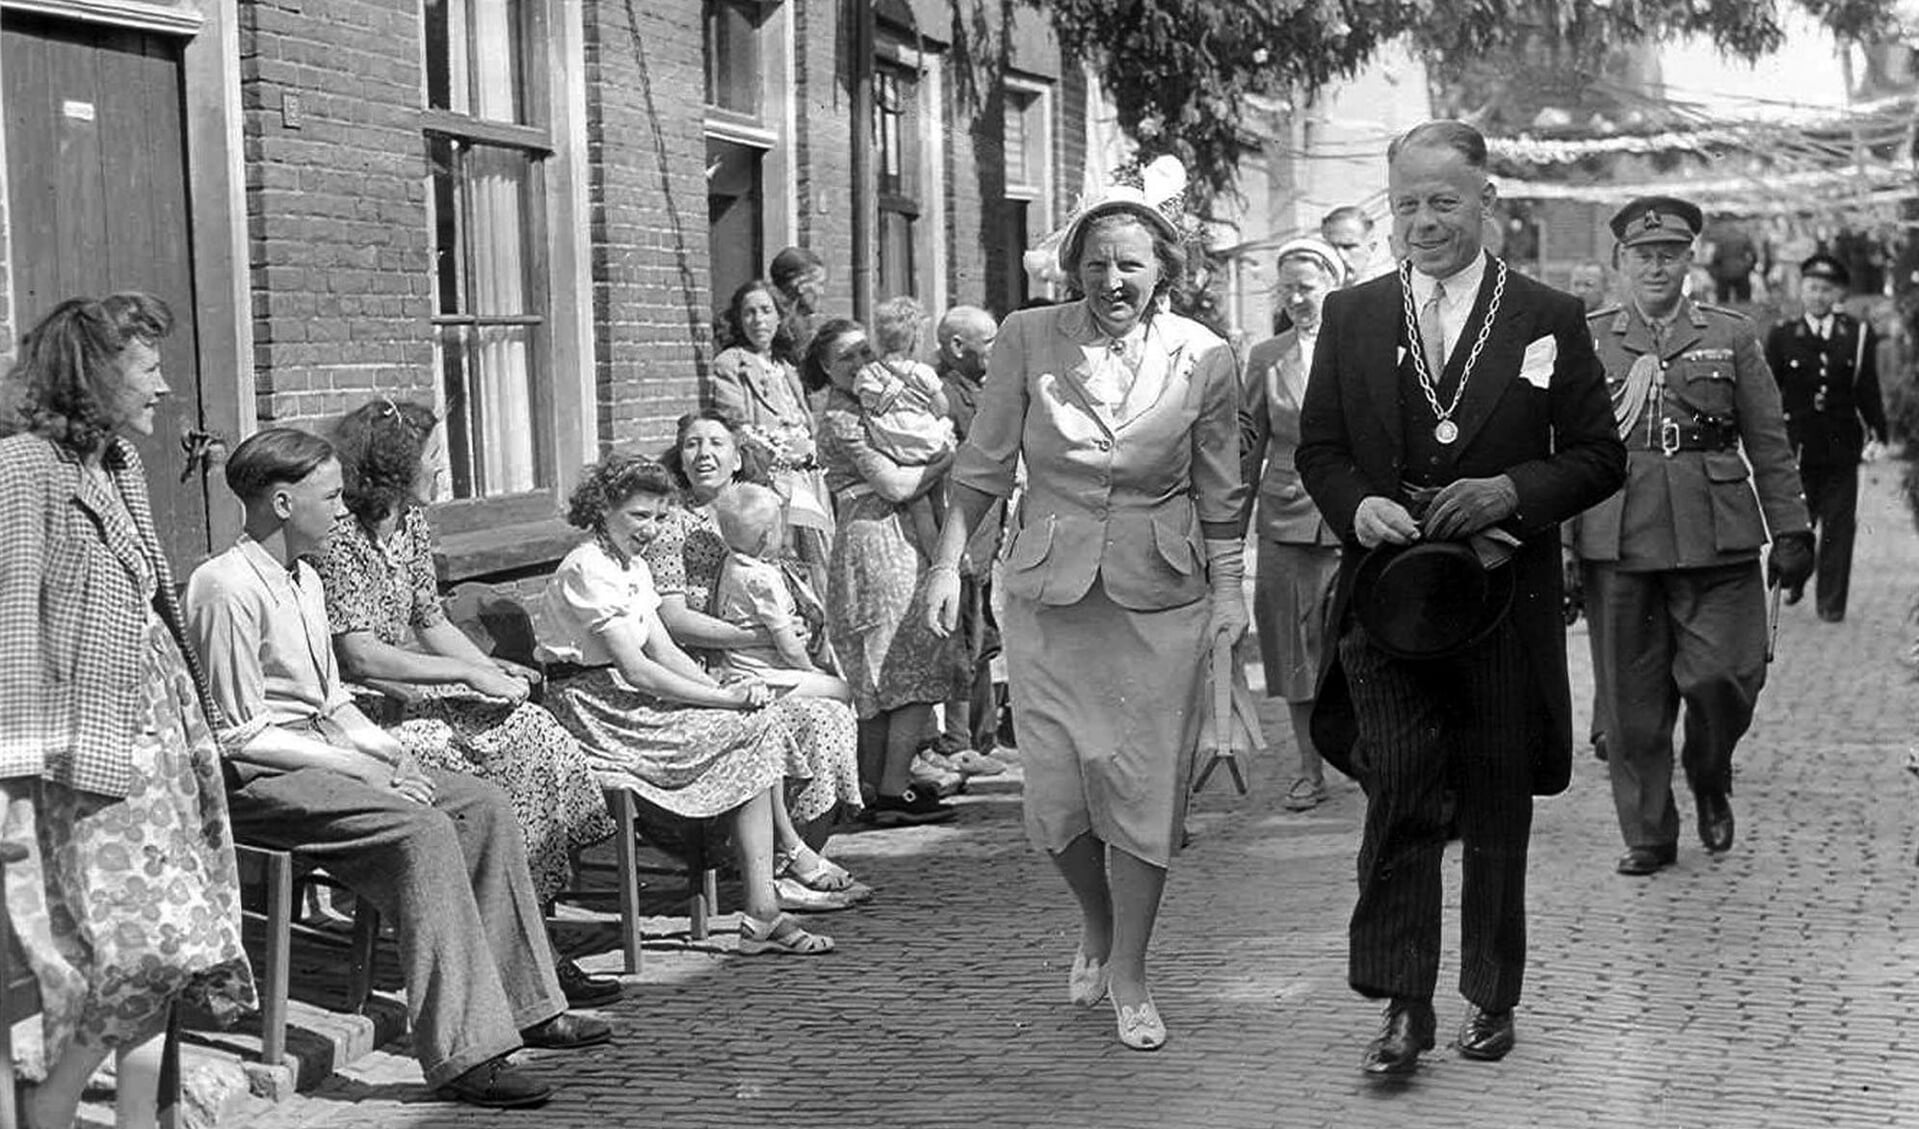 Burgemeester Cees Kentie met koningin Juliana in de Vlierstraat, 9 juni 1950